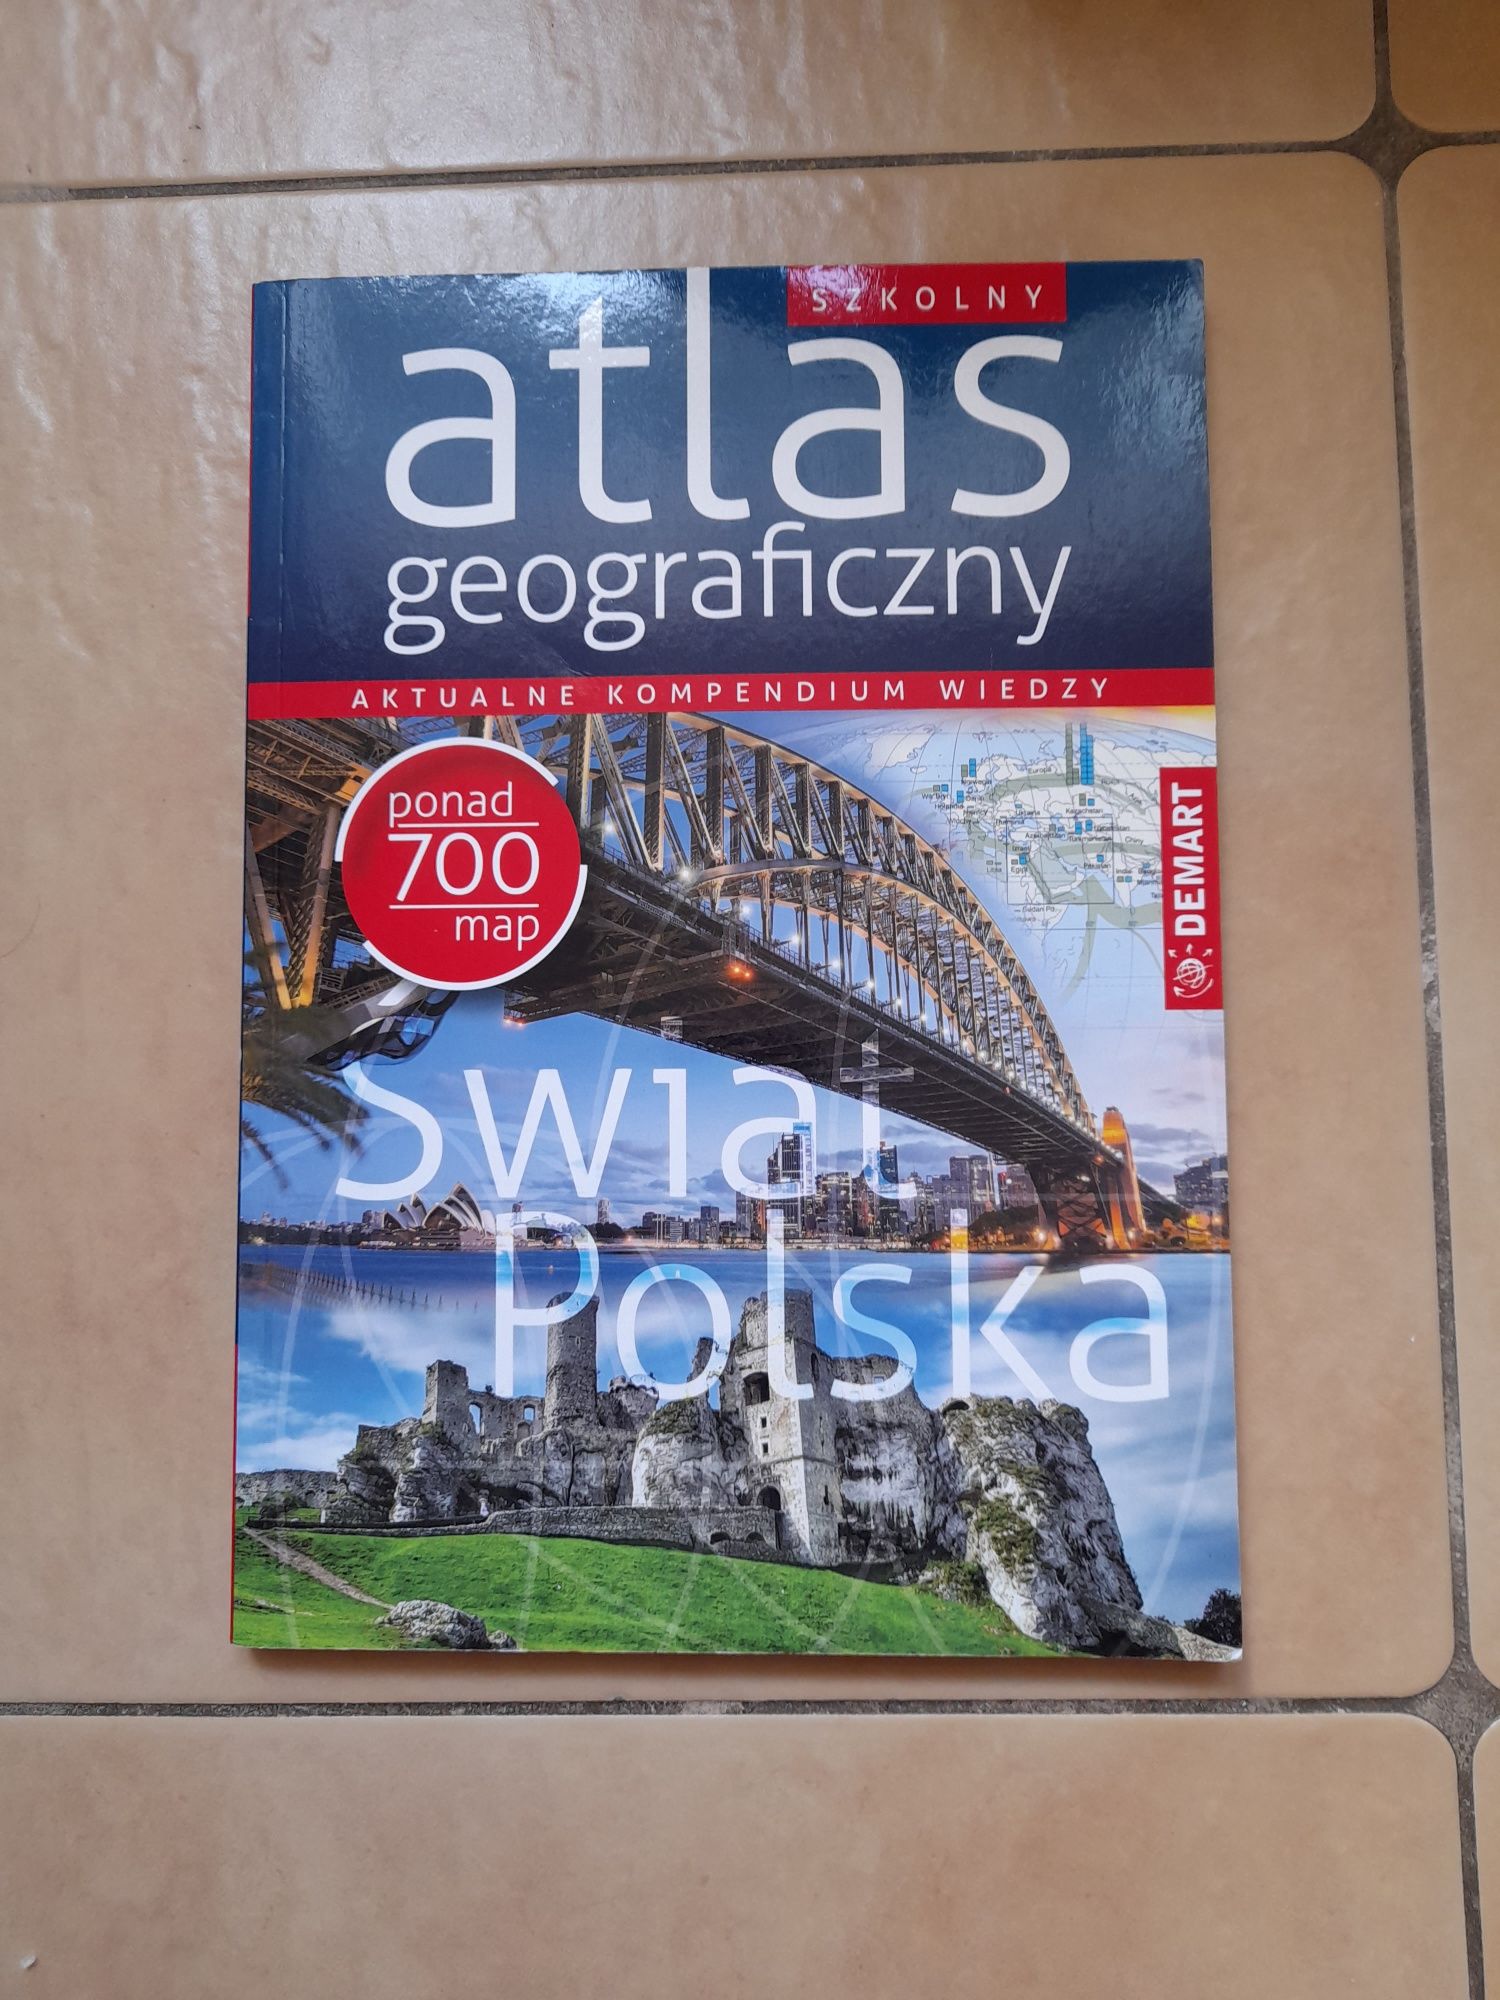 Atlas geograficzny szkolny